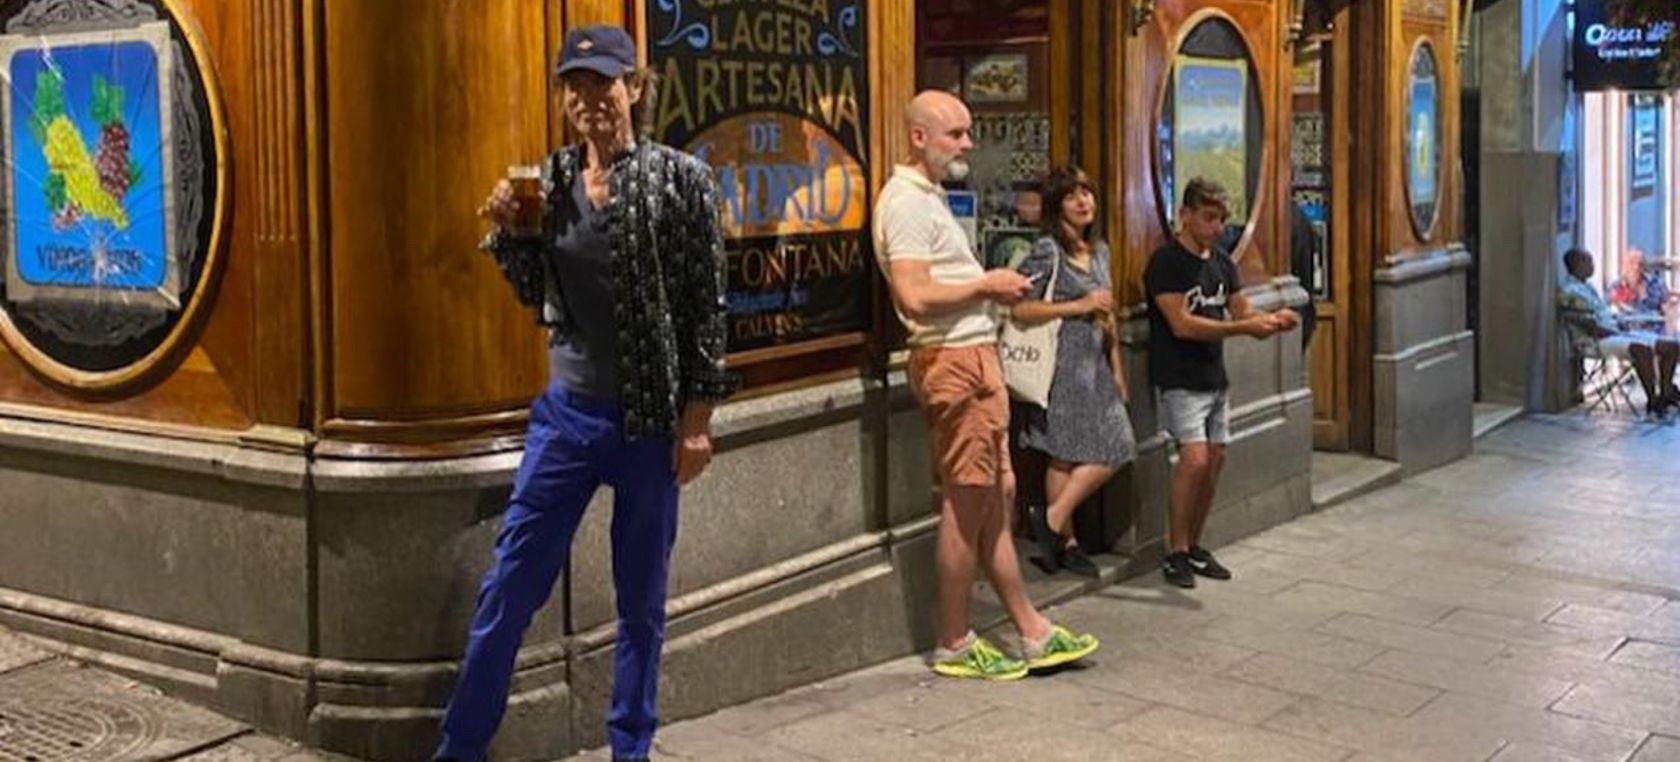 La mítica taberna de Chueca en la que Mick Jagger se ha tomado su primera cerveza en Madrid